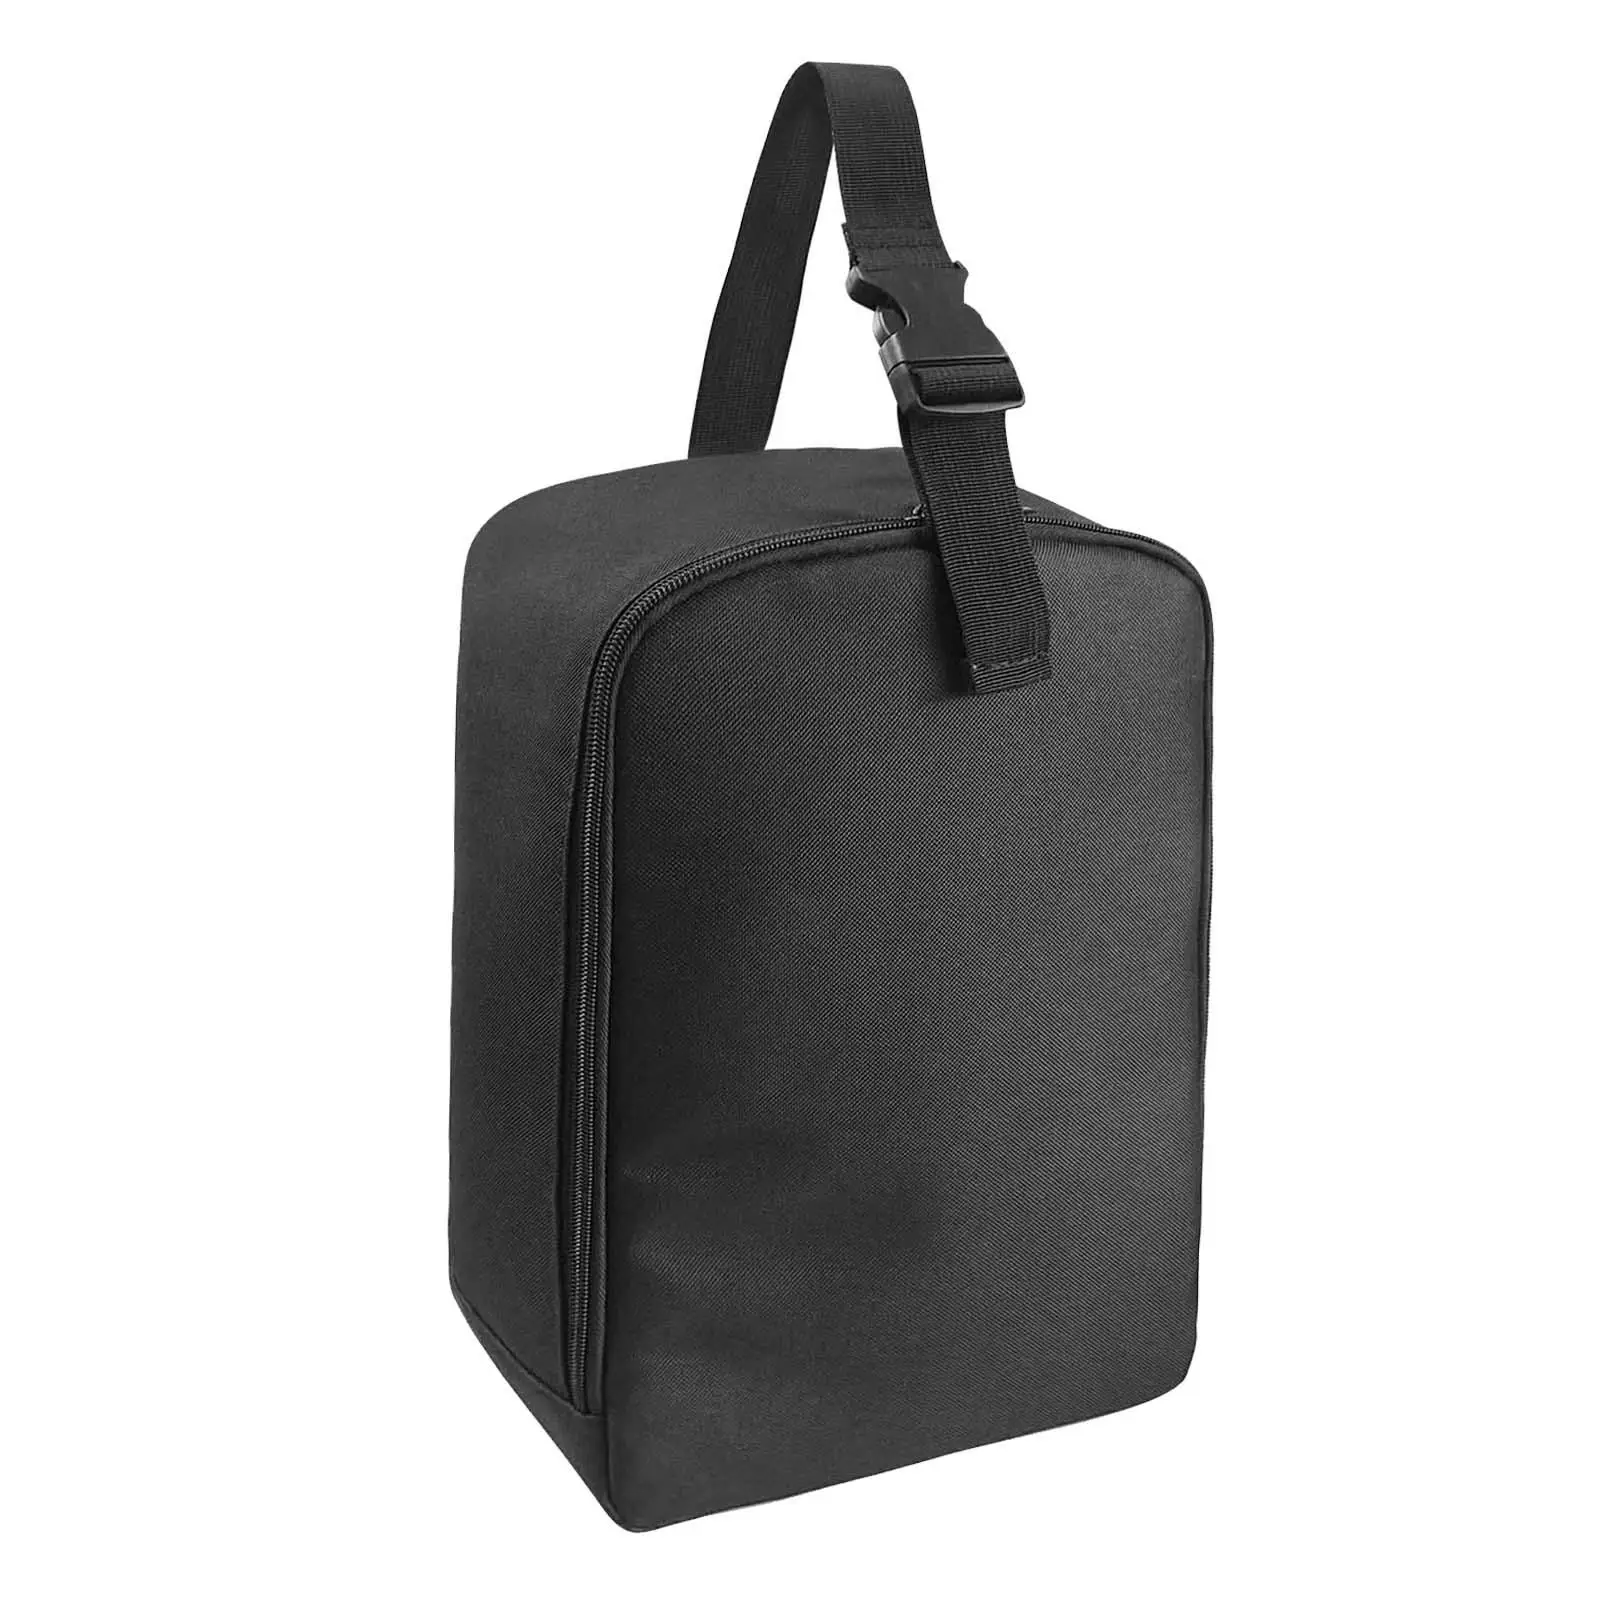 Garment Steamer Case Lightweight Duable Travel Steamer Bag for Trip